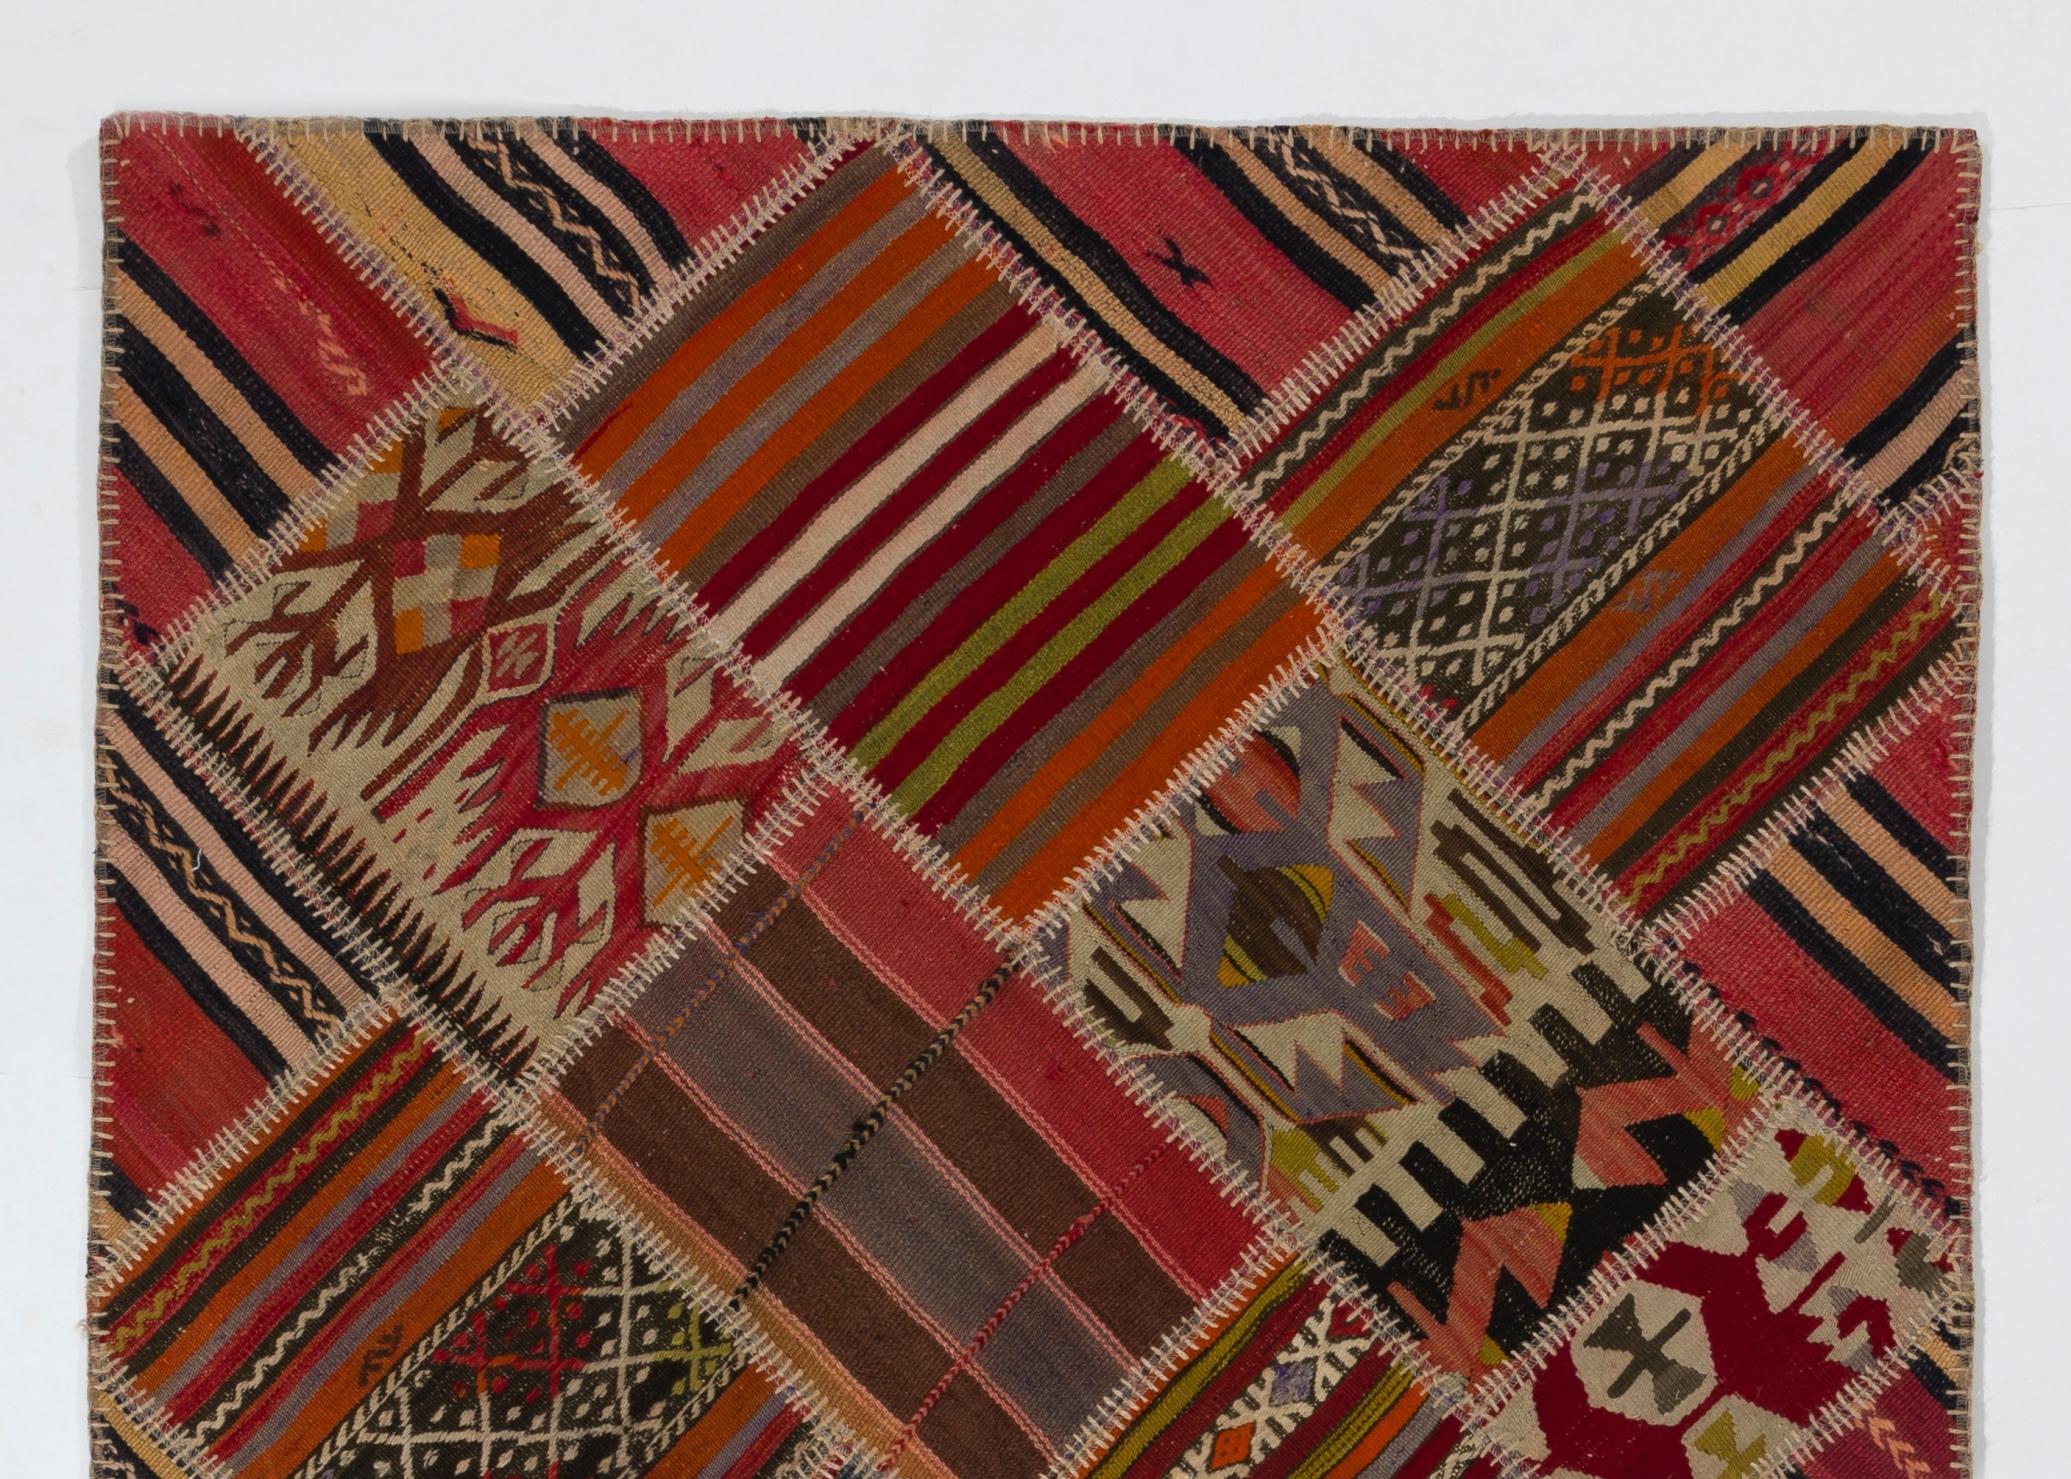 Ein farbenfroher, fröhlicher türkischer Kilim-Teppich (Flachgewebe), handgenäht aus handgewebten türkischen Kilim-Stücken. Es verfügt über ein Sortiment von Aufnähern in lebhaften Farben mit einer Vielzahl von klassischen Kilim-Motiven, die zu einem